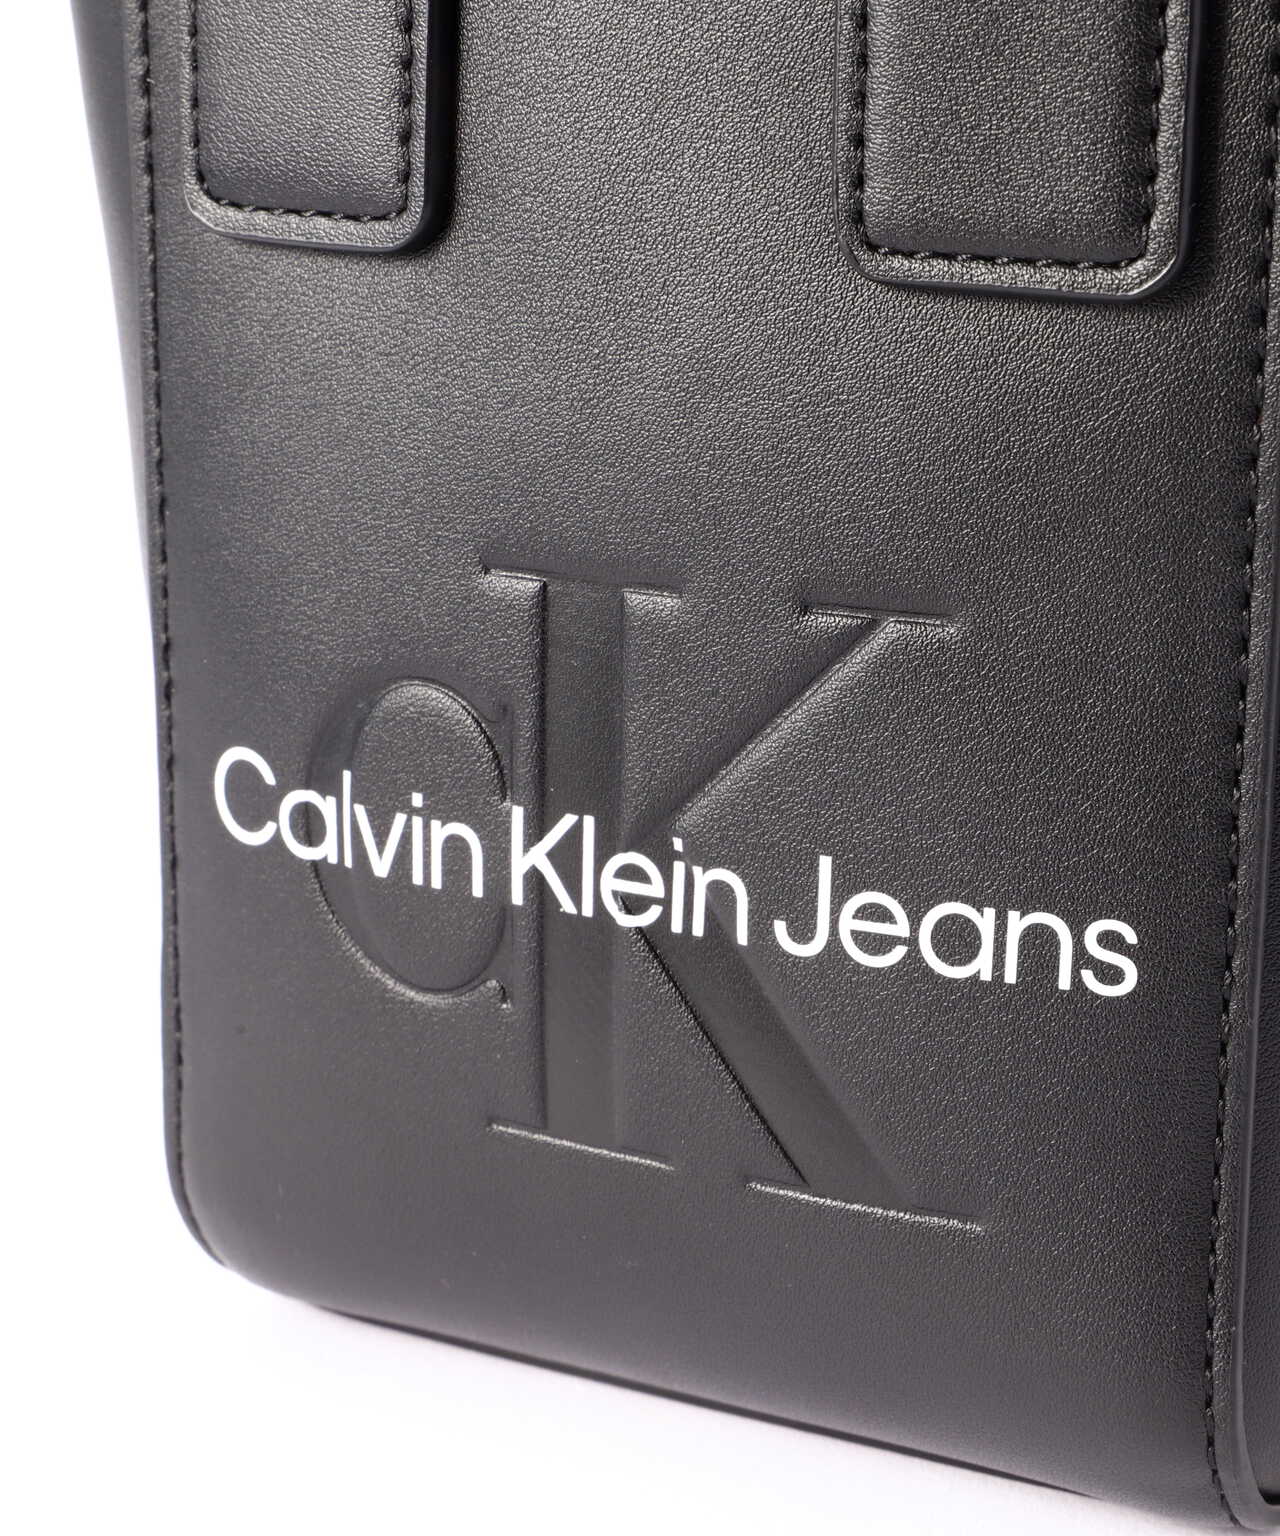 Calvin Klein Jeans（カルバンクラインジーンズ）マイクロトート